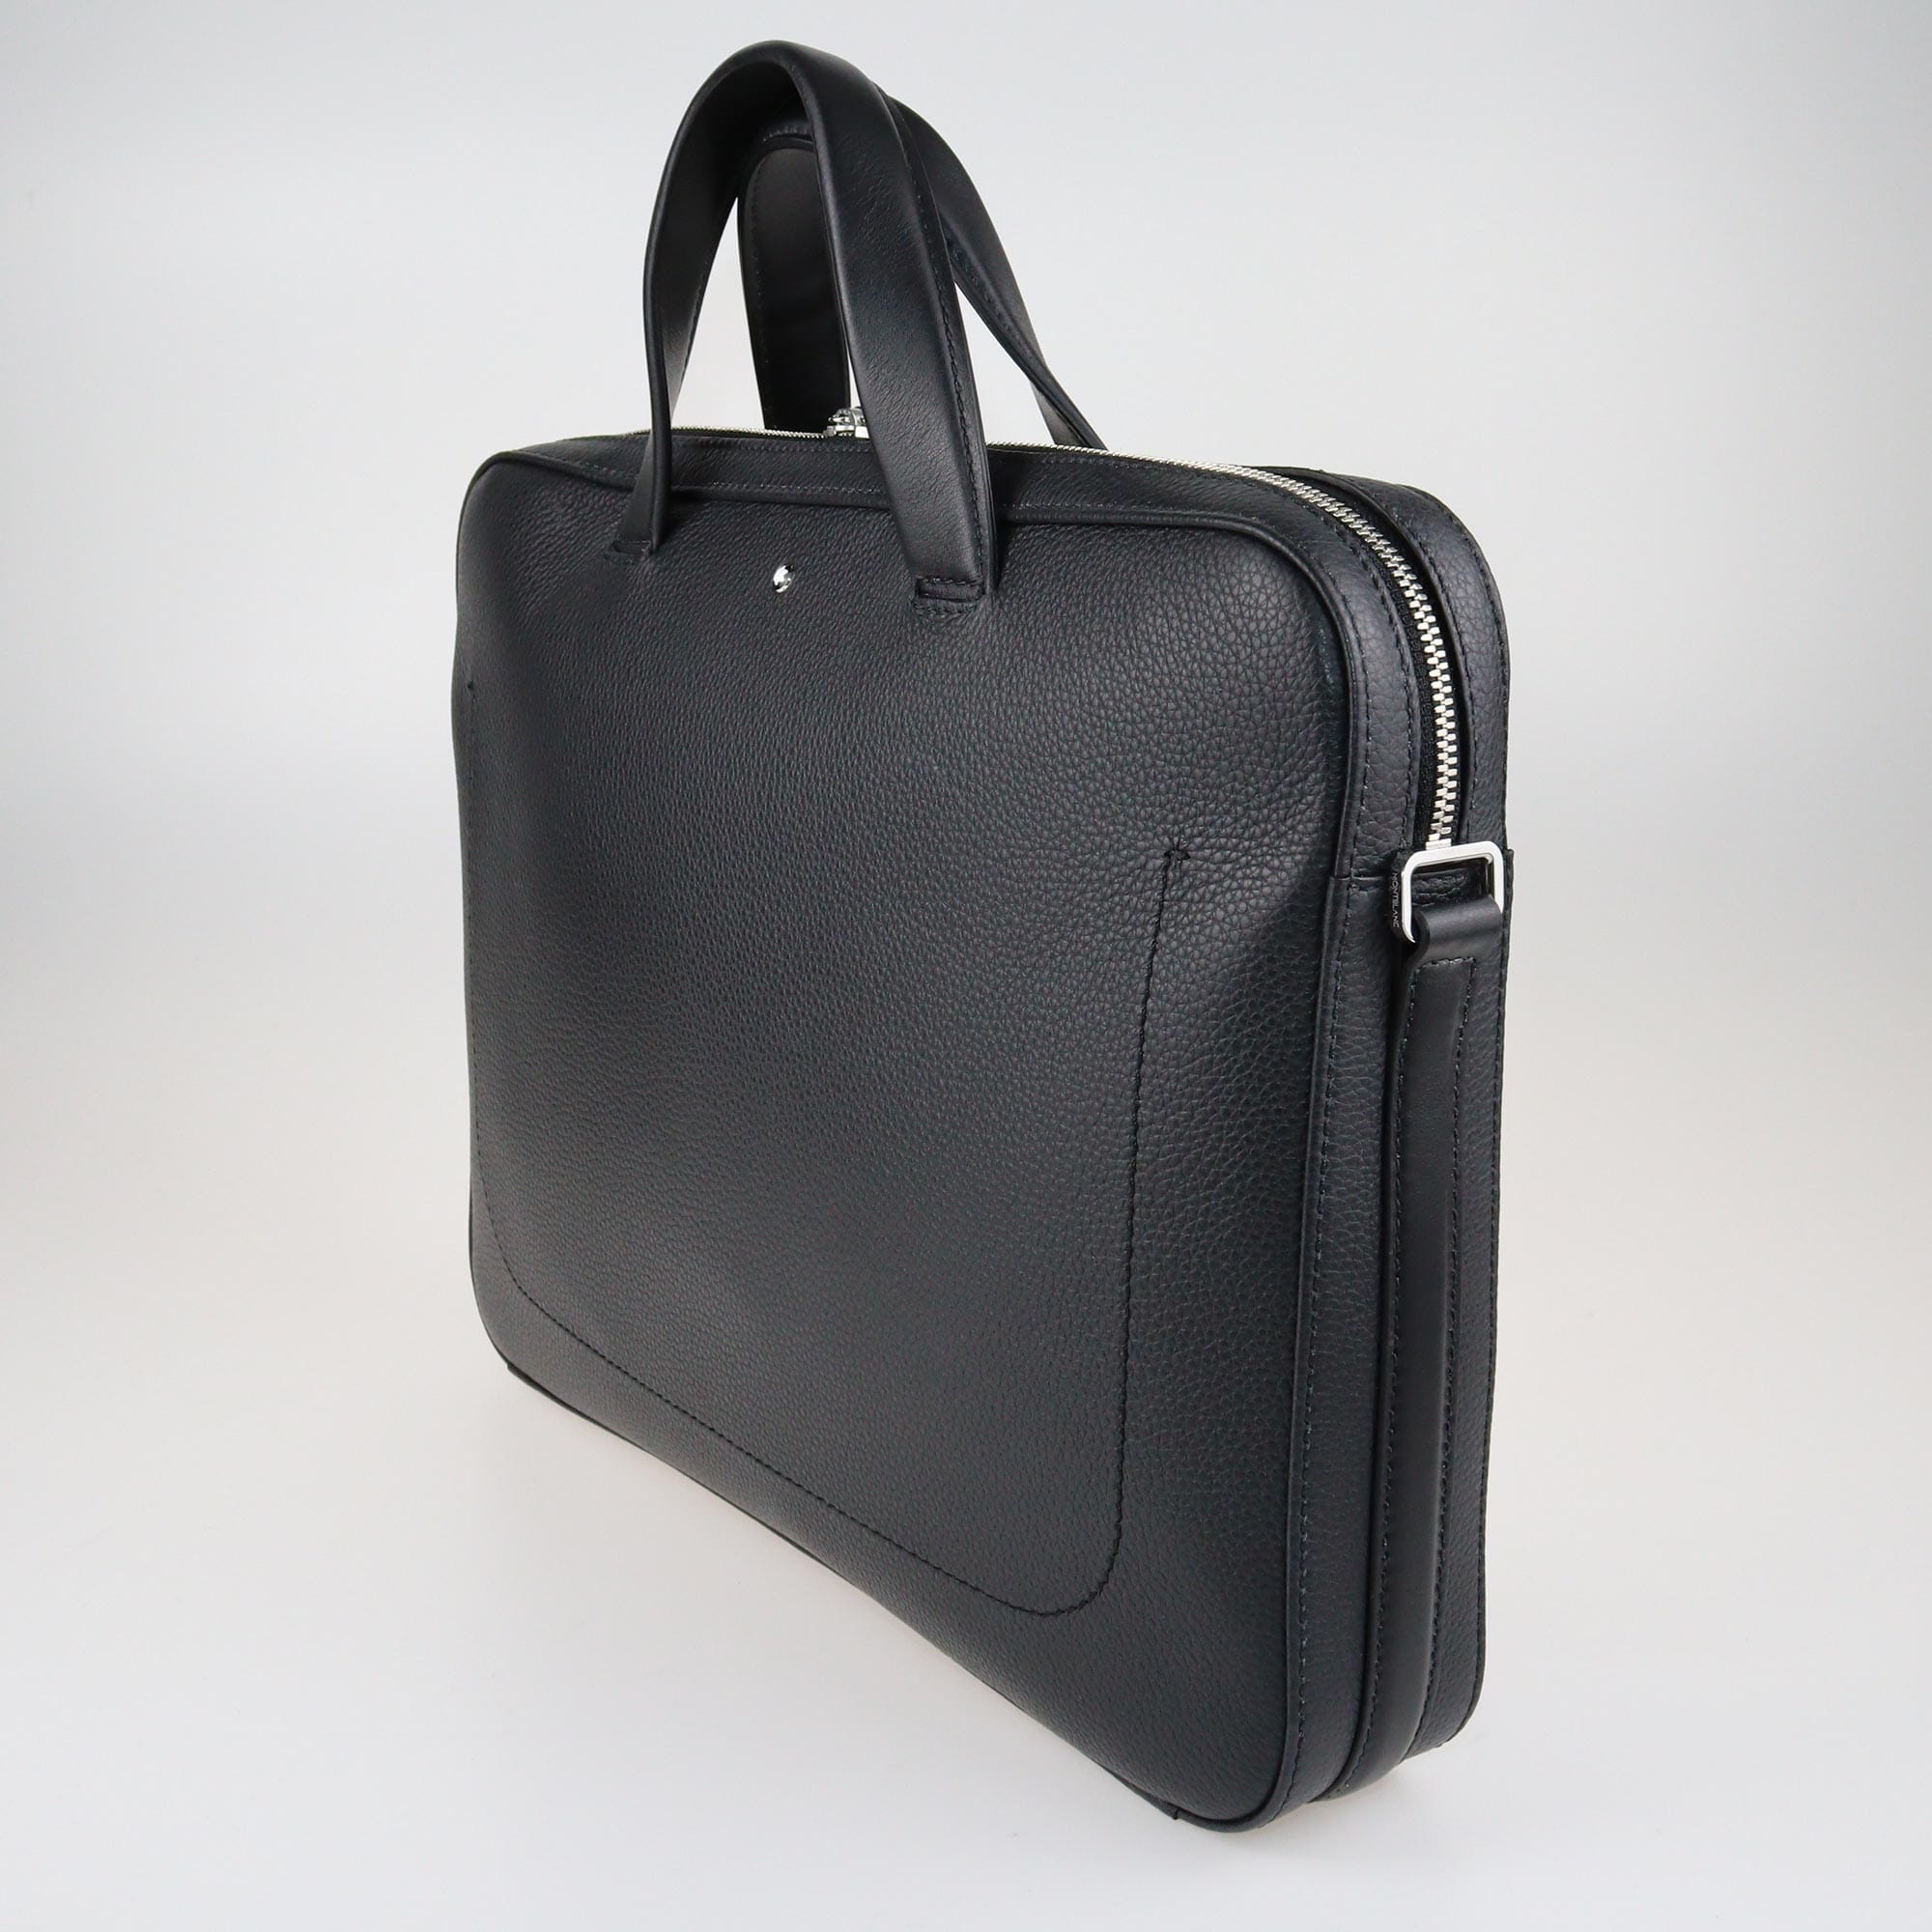 Montblanc Black Laptop Bag Bags Montblanc 